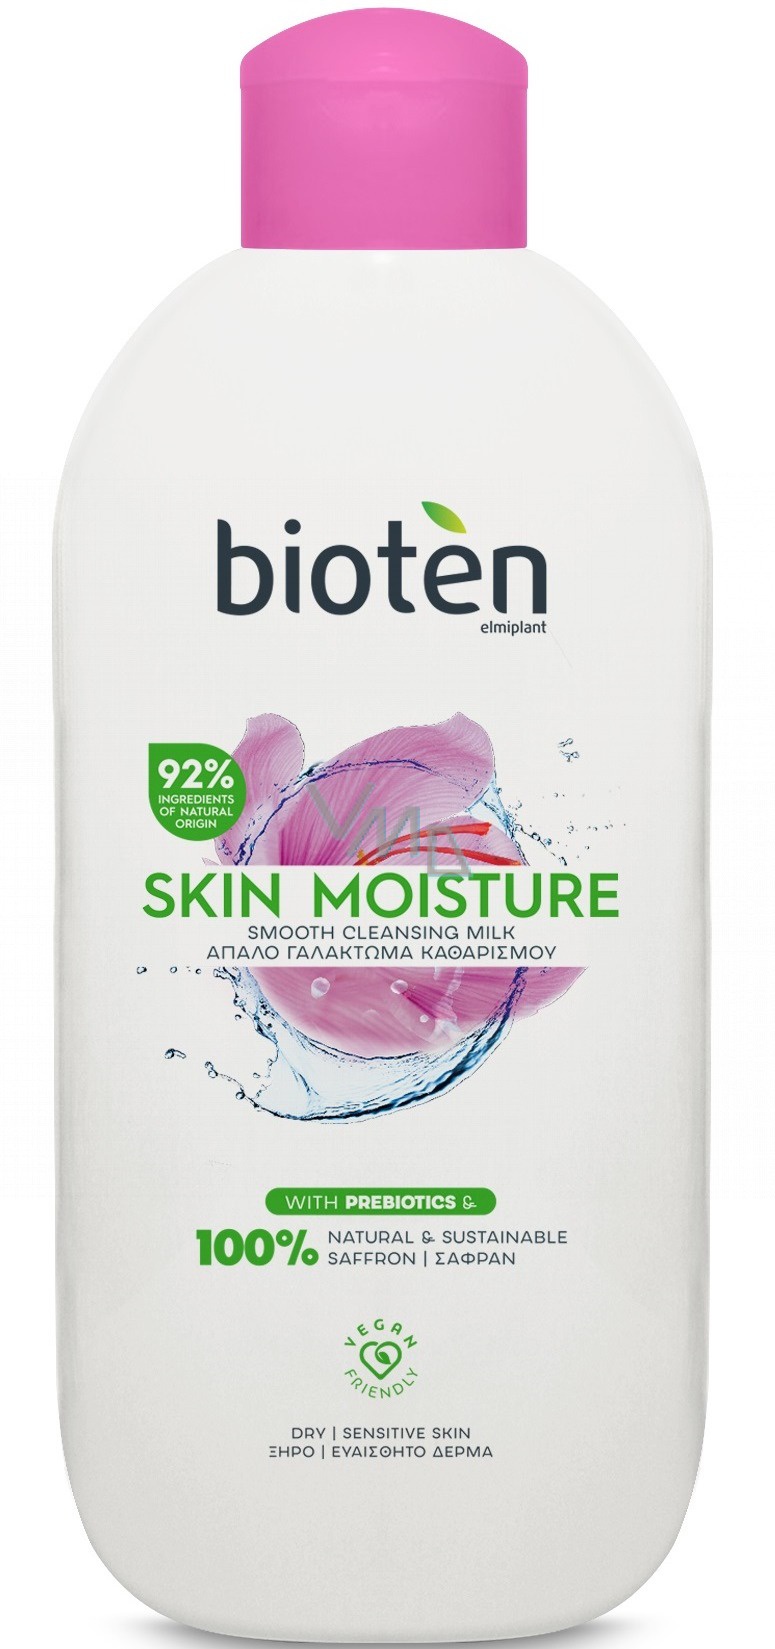 Bioten Skin Moisture Cleansing Milk